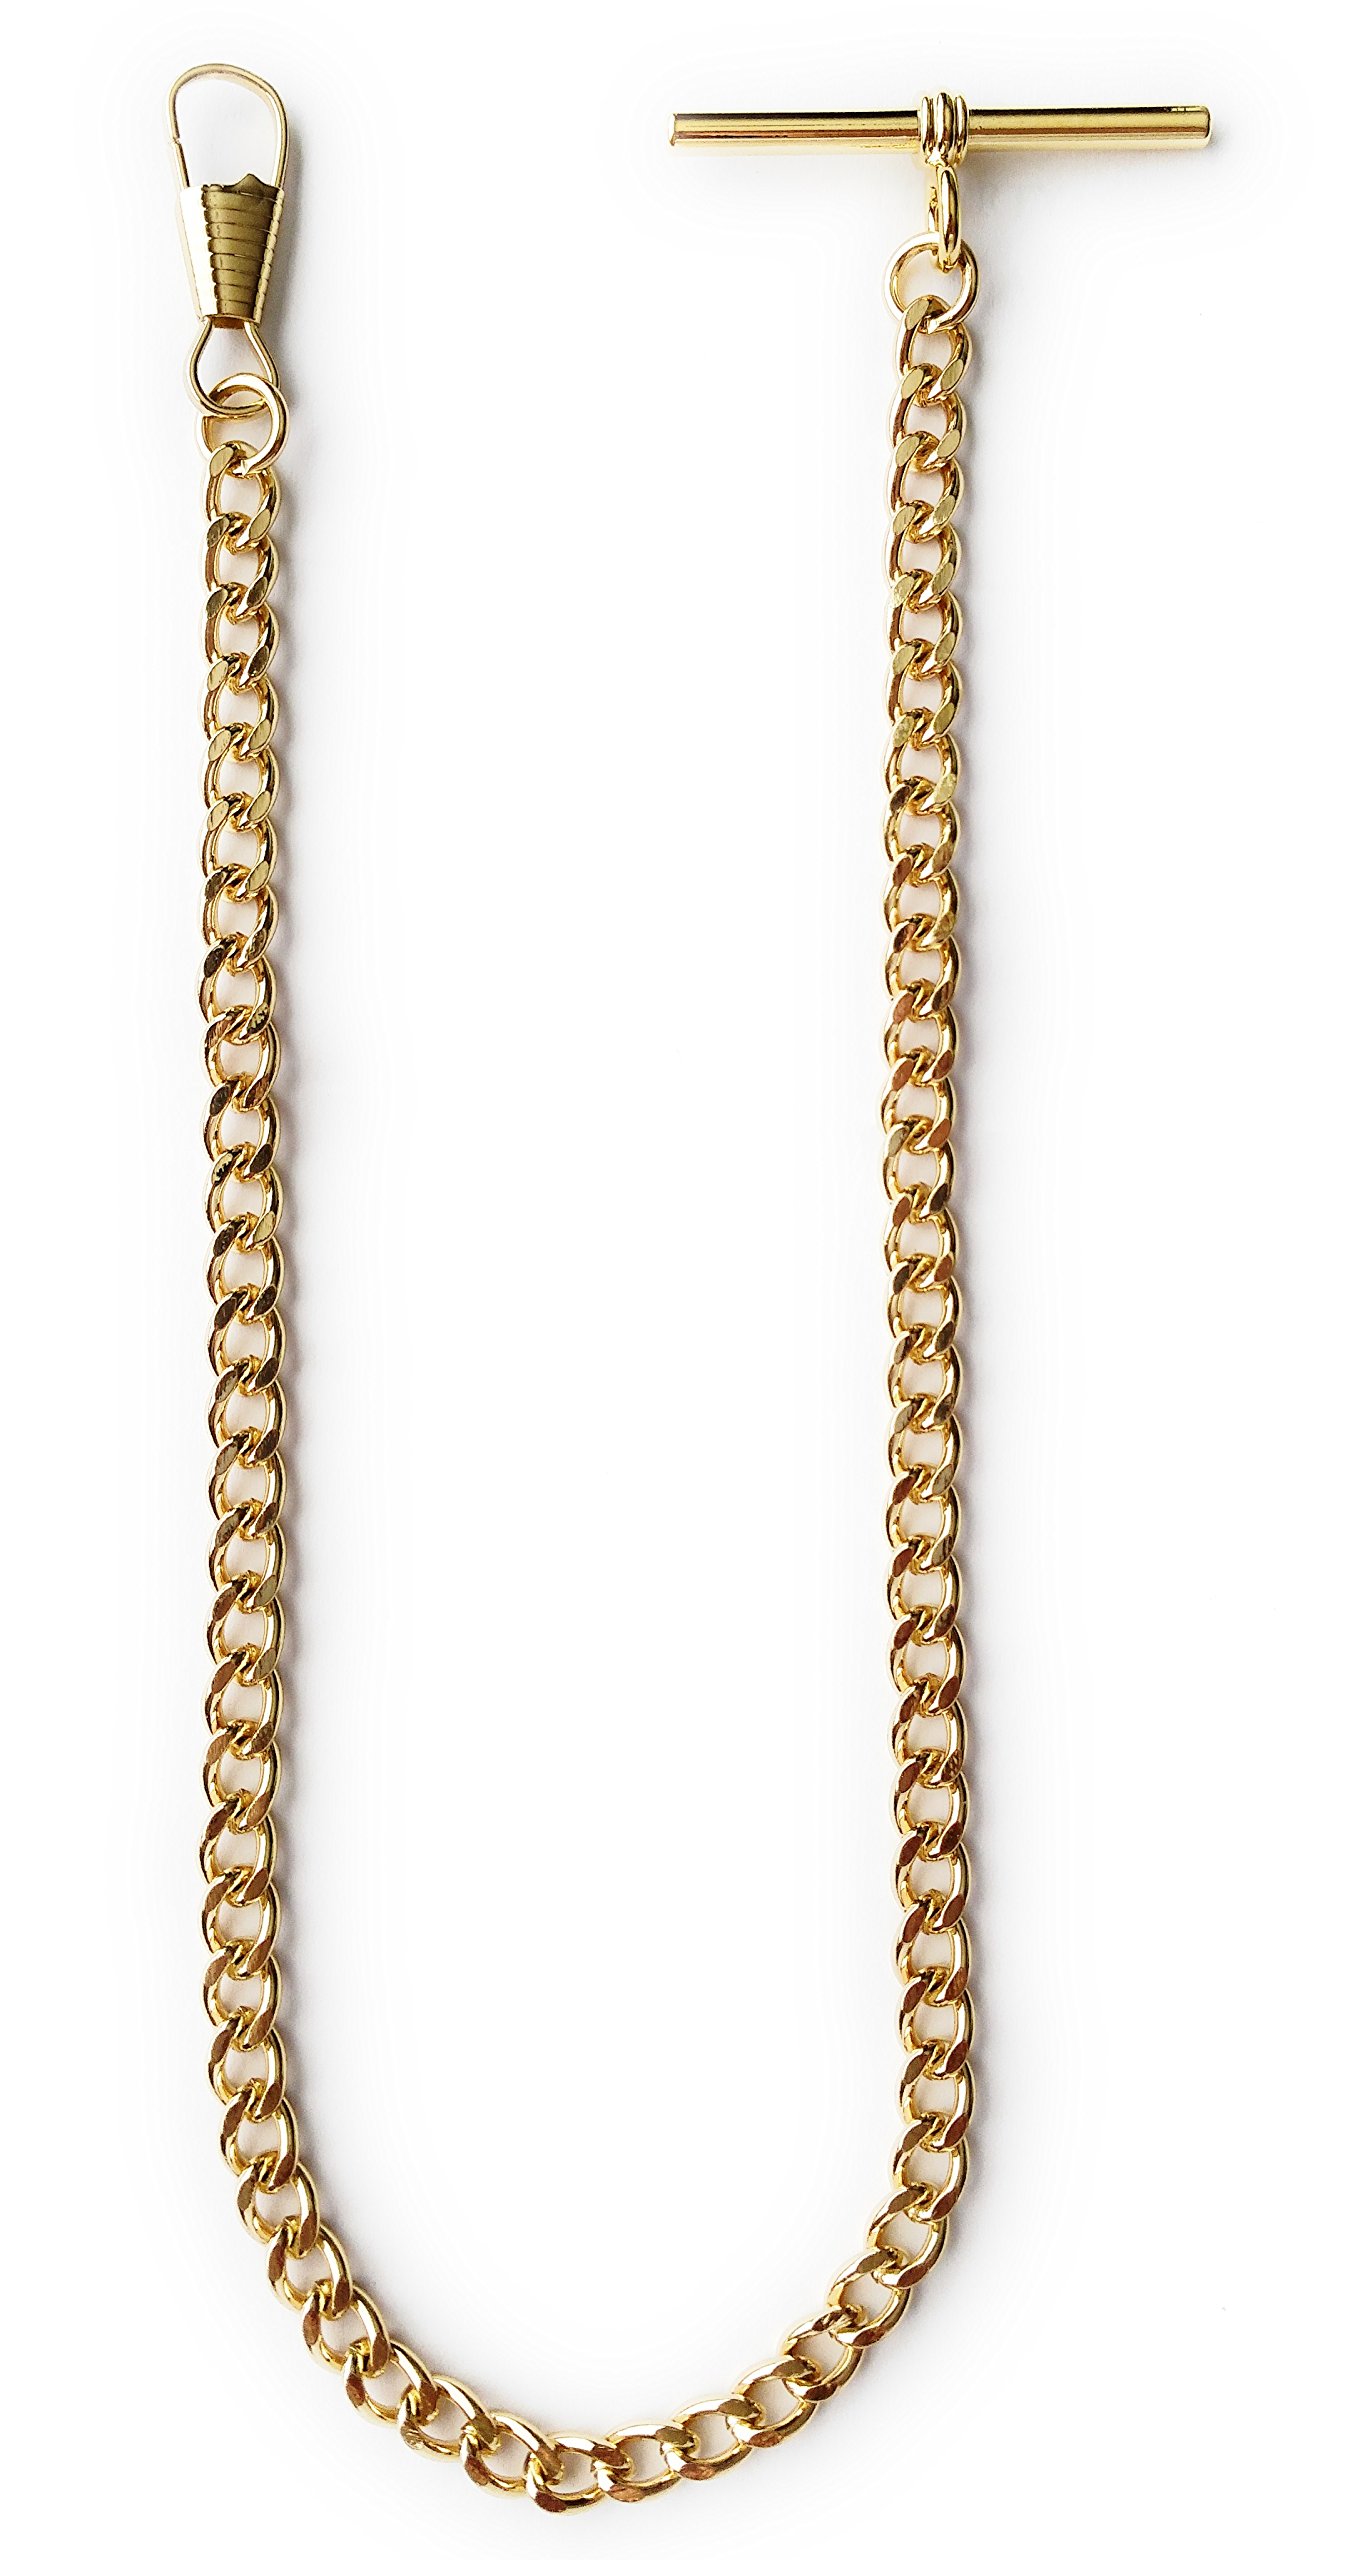 Desperado Gold Albert Vest Pocket Watch Chain with T bar 3910-G